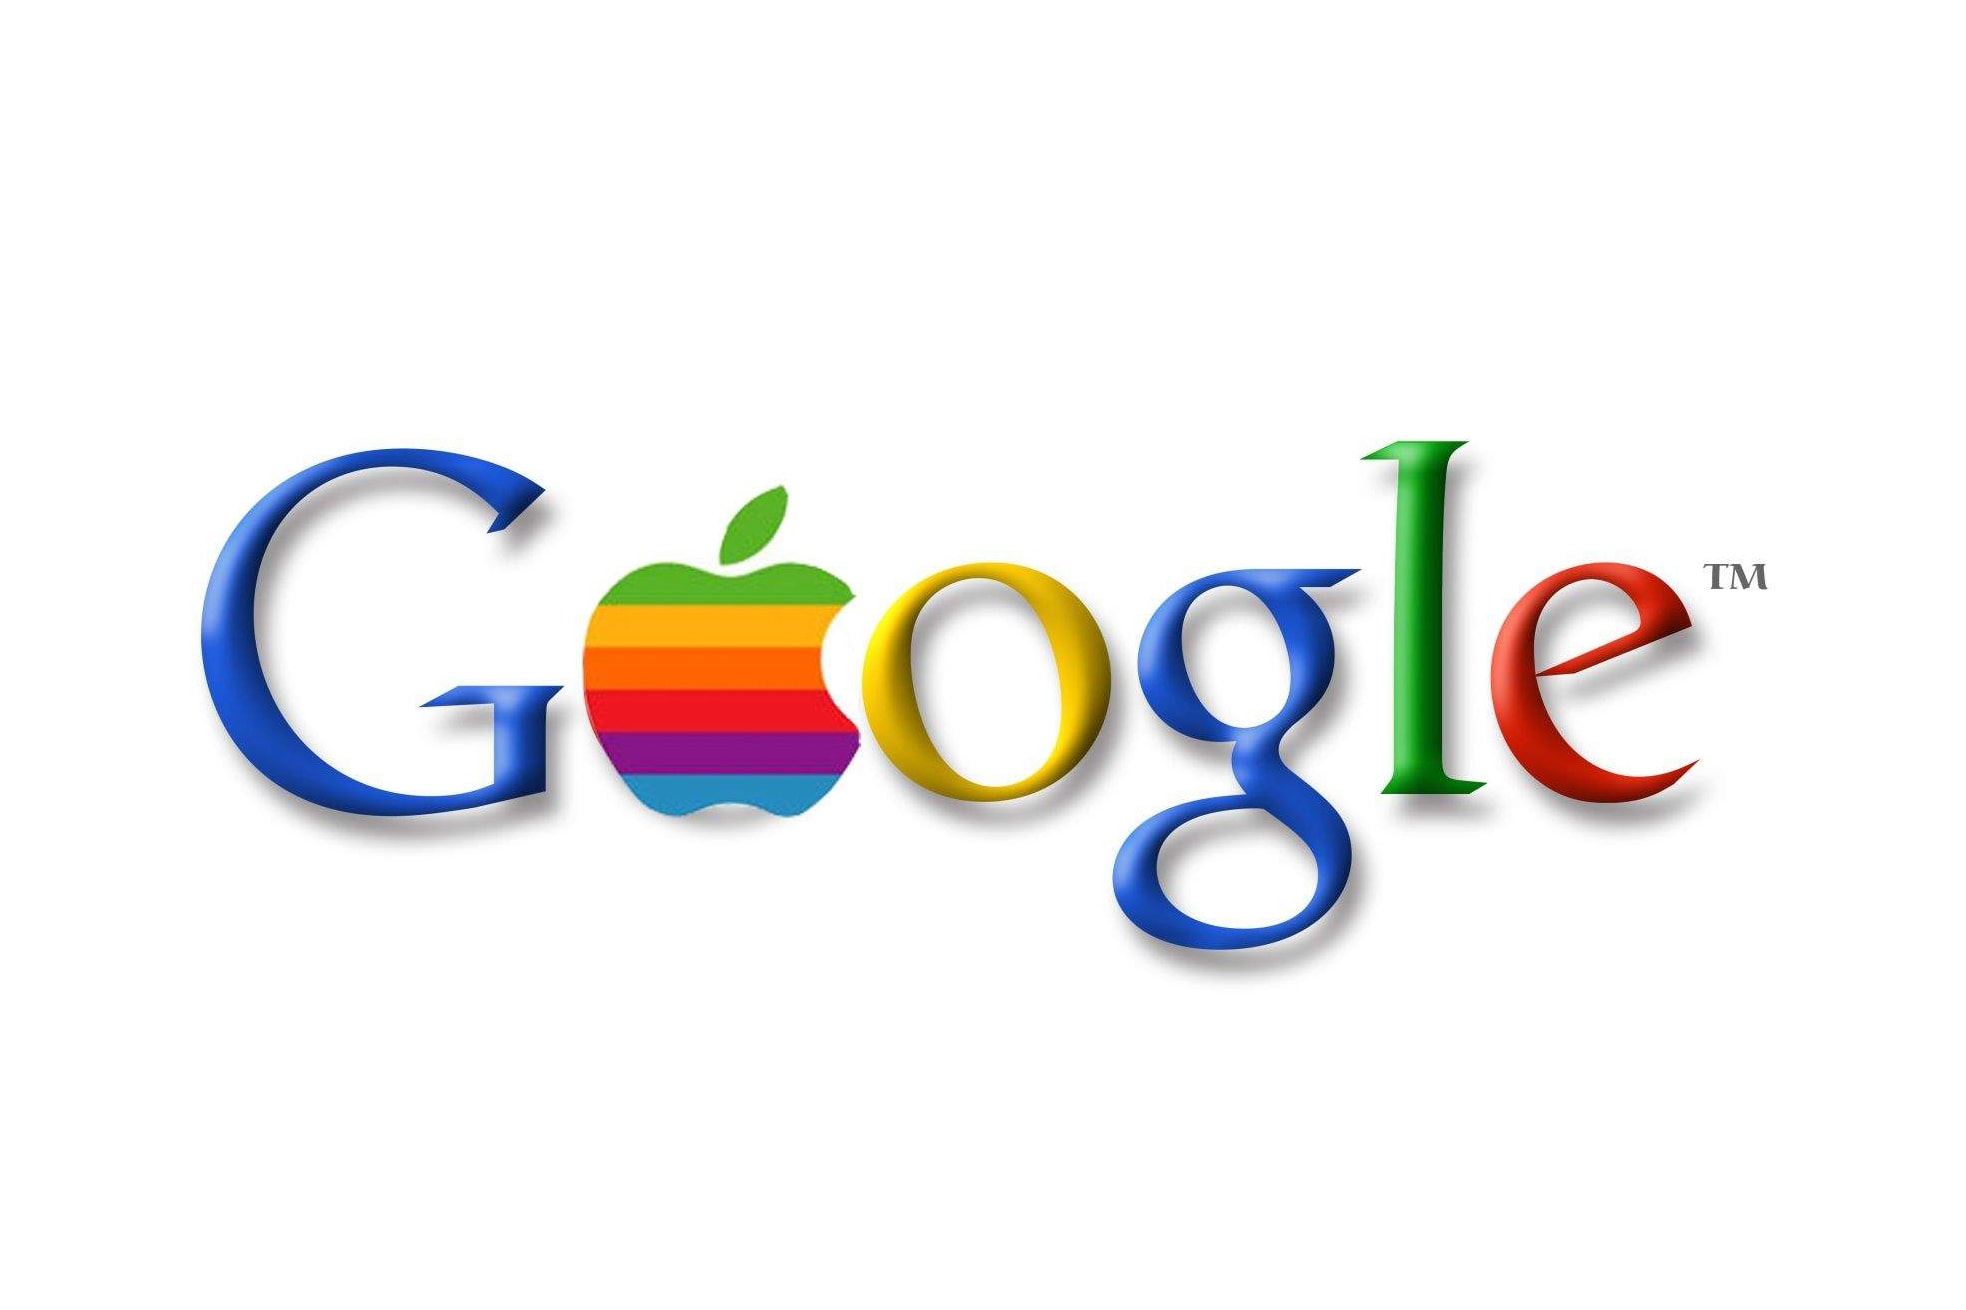 道瓊斯通訊社誤發 Google 以 90 億美元收購 Apple 的消息